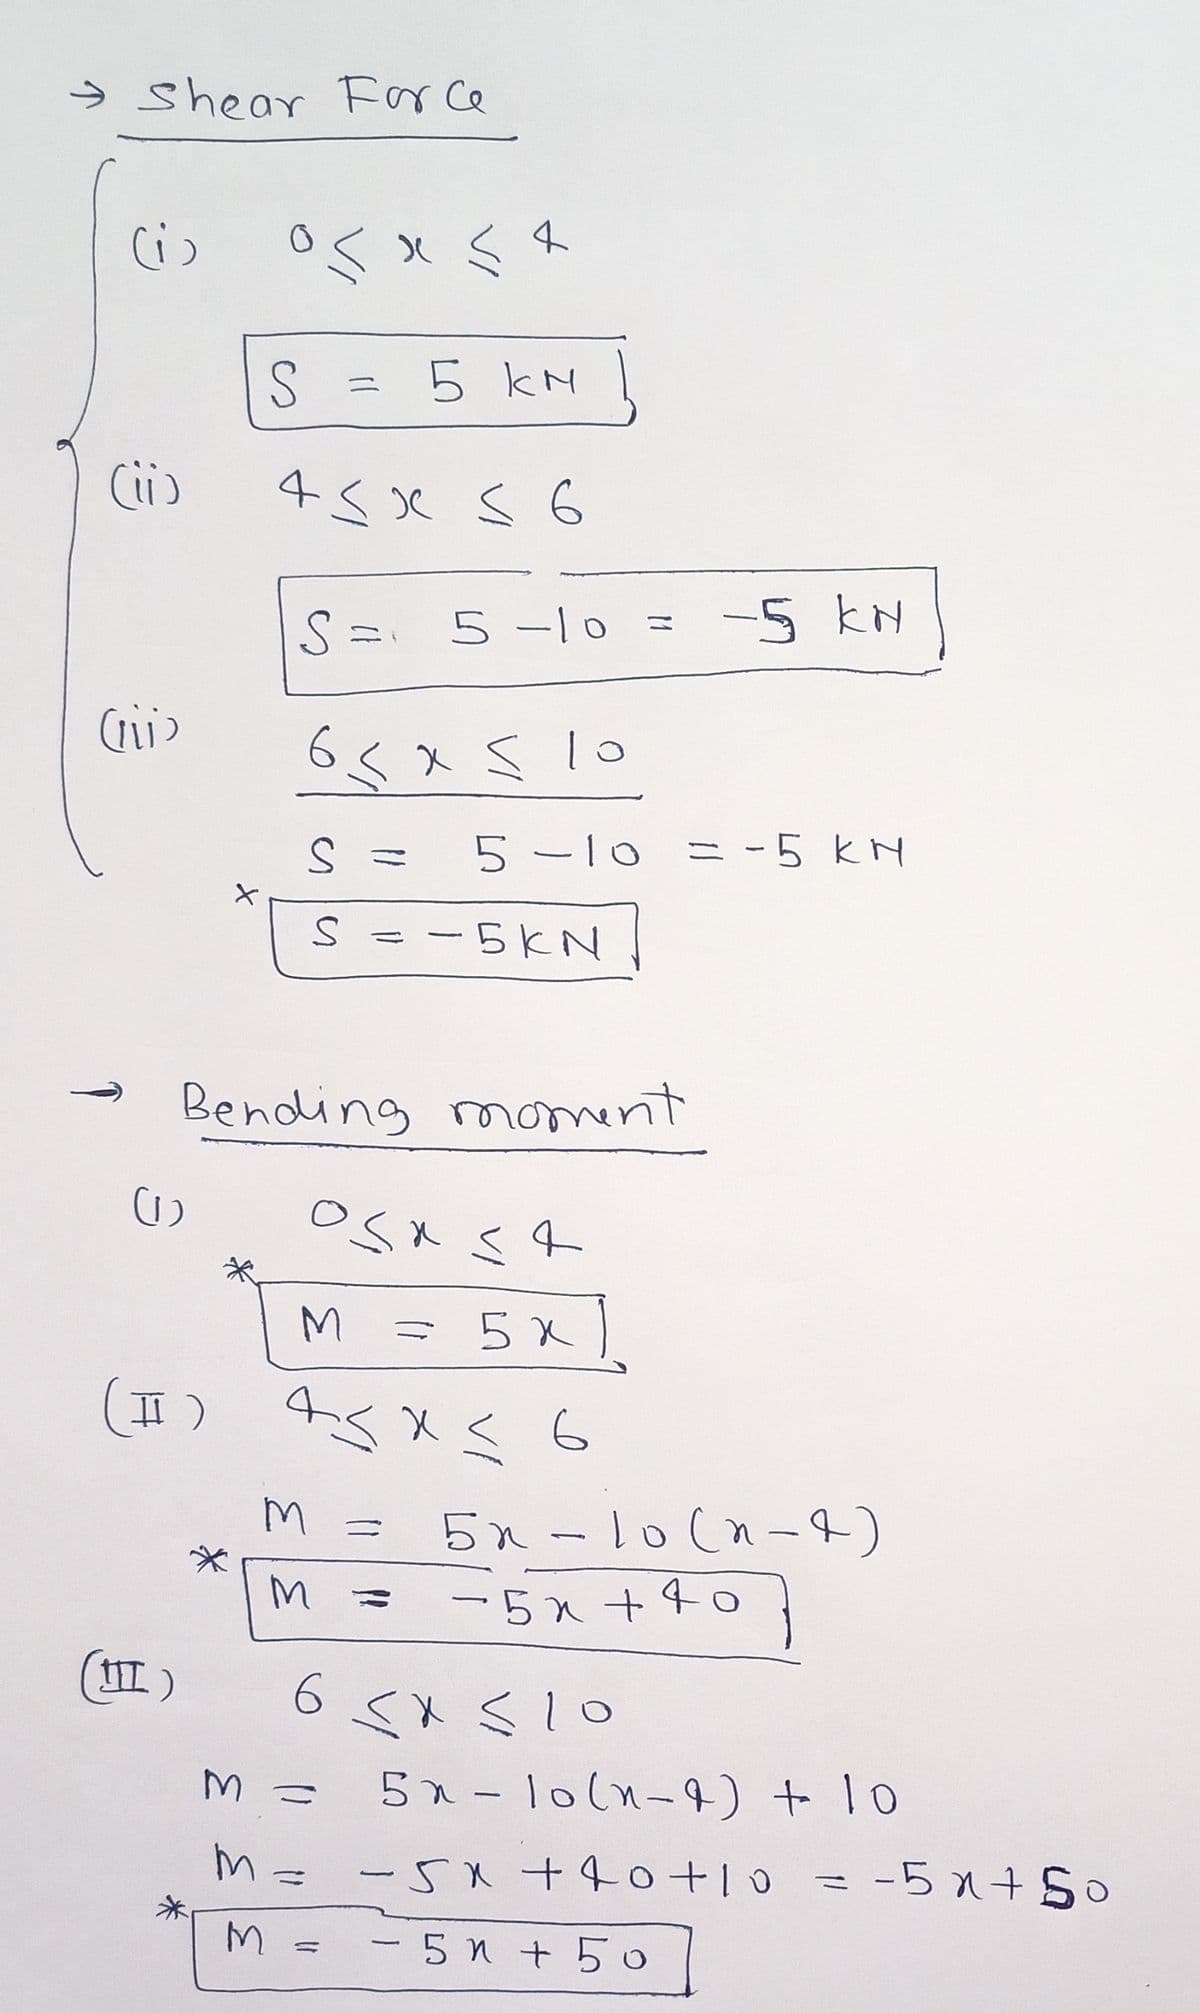 う shear Frce
0くx八
5 kM
二
Ci)
5-10 =
-5 kN
65x510
X s lo
Sミ
5-lo ニ -5kN
S = -5KN
Bending moment
M.
= 5x)
ニ
5x-10(n-4)
ニ
ー5x+40
6<xく1o
5x-1o(n-4) t 10
ニW
M= -5 +40+10 = -5x+So
-5x+ S0
- 5n + 5o
-
の
の
